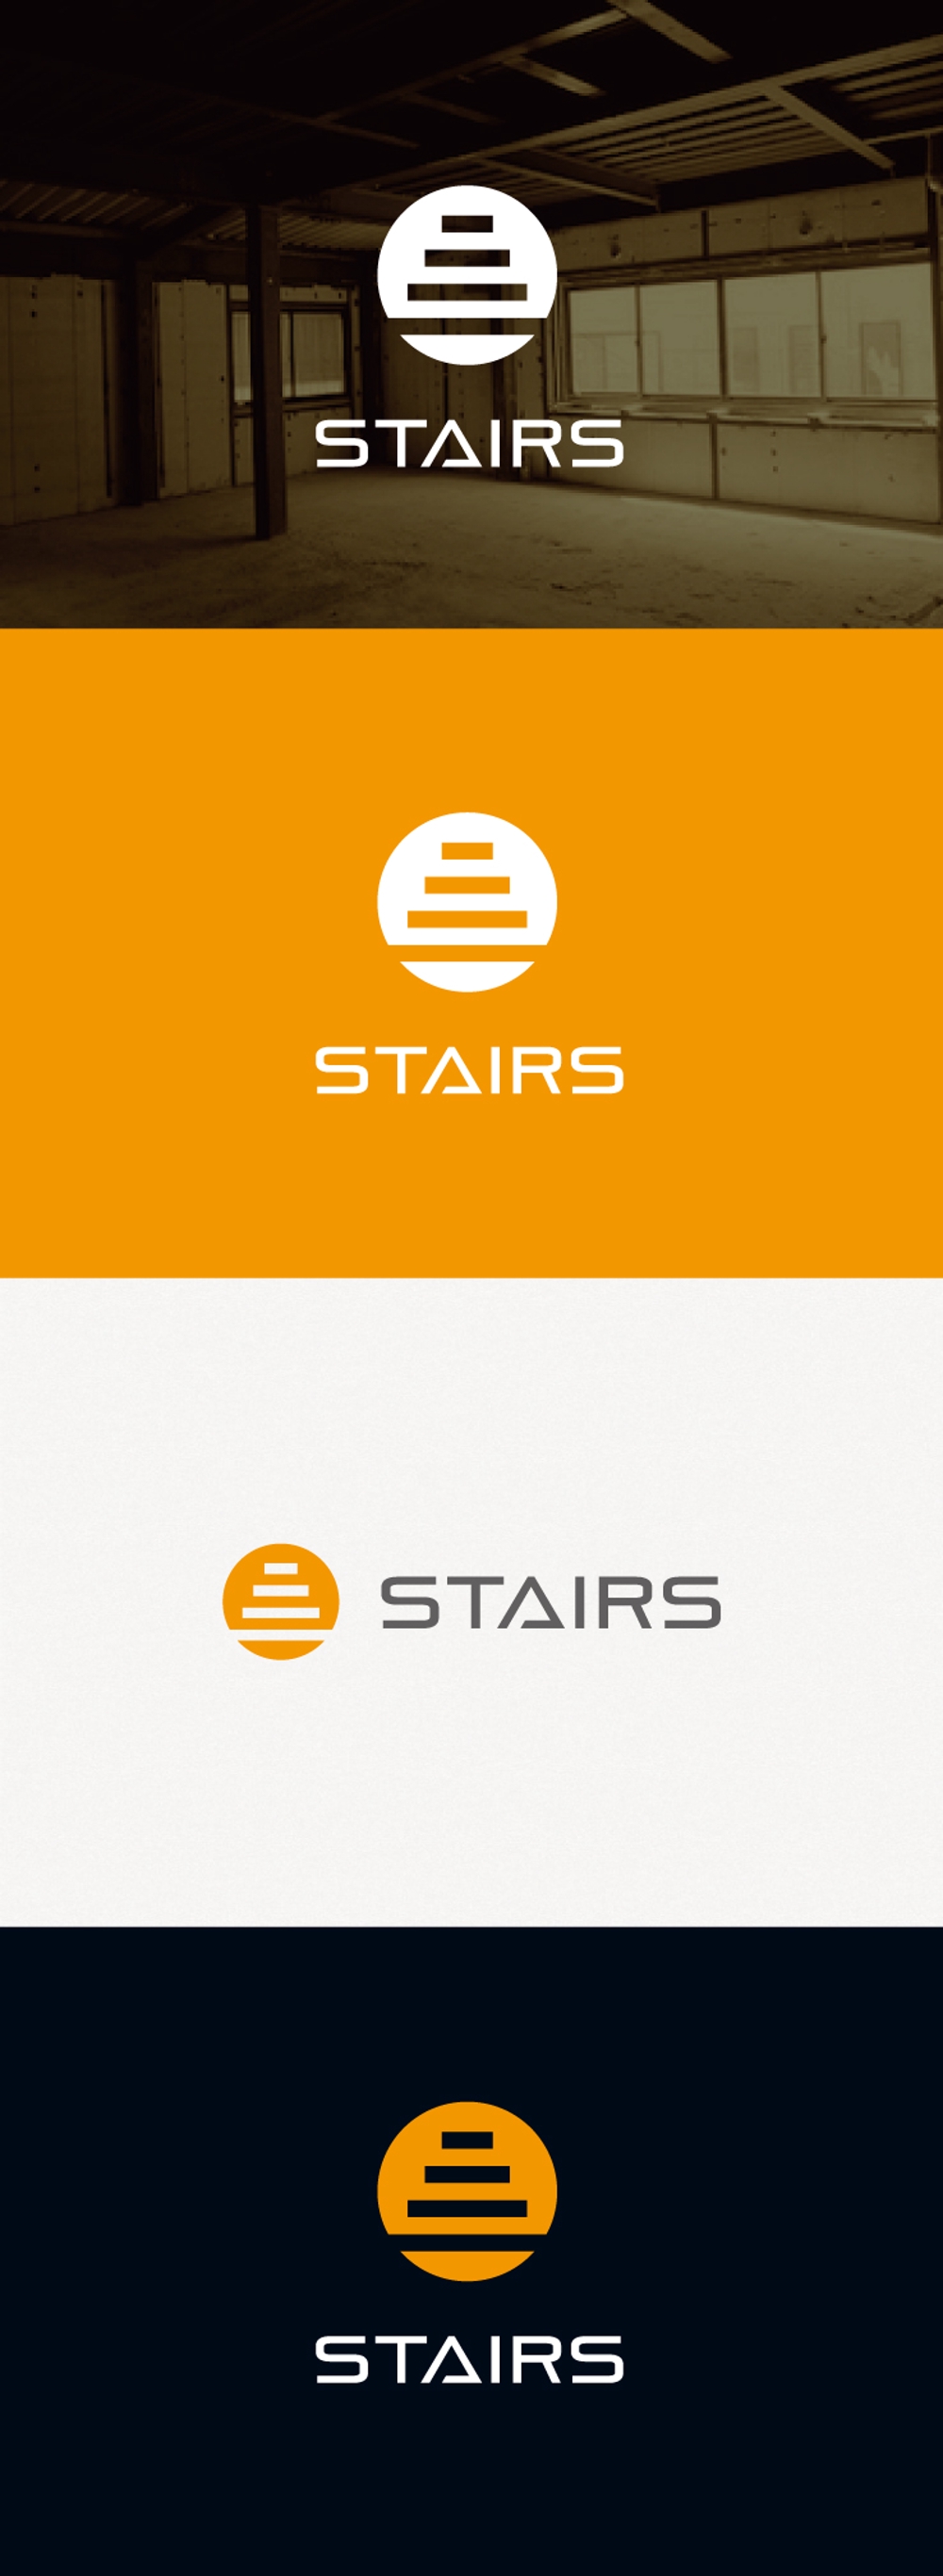 内装工事『Stairs』個人事業主のロゴマーク